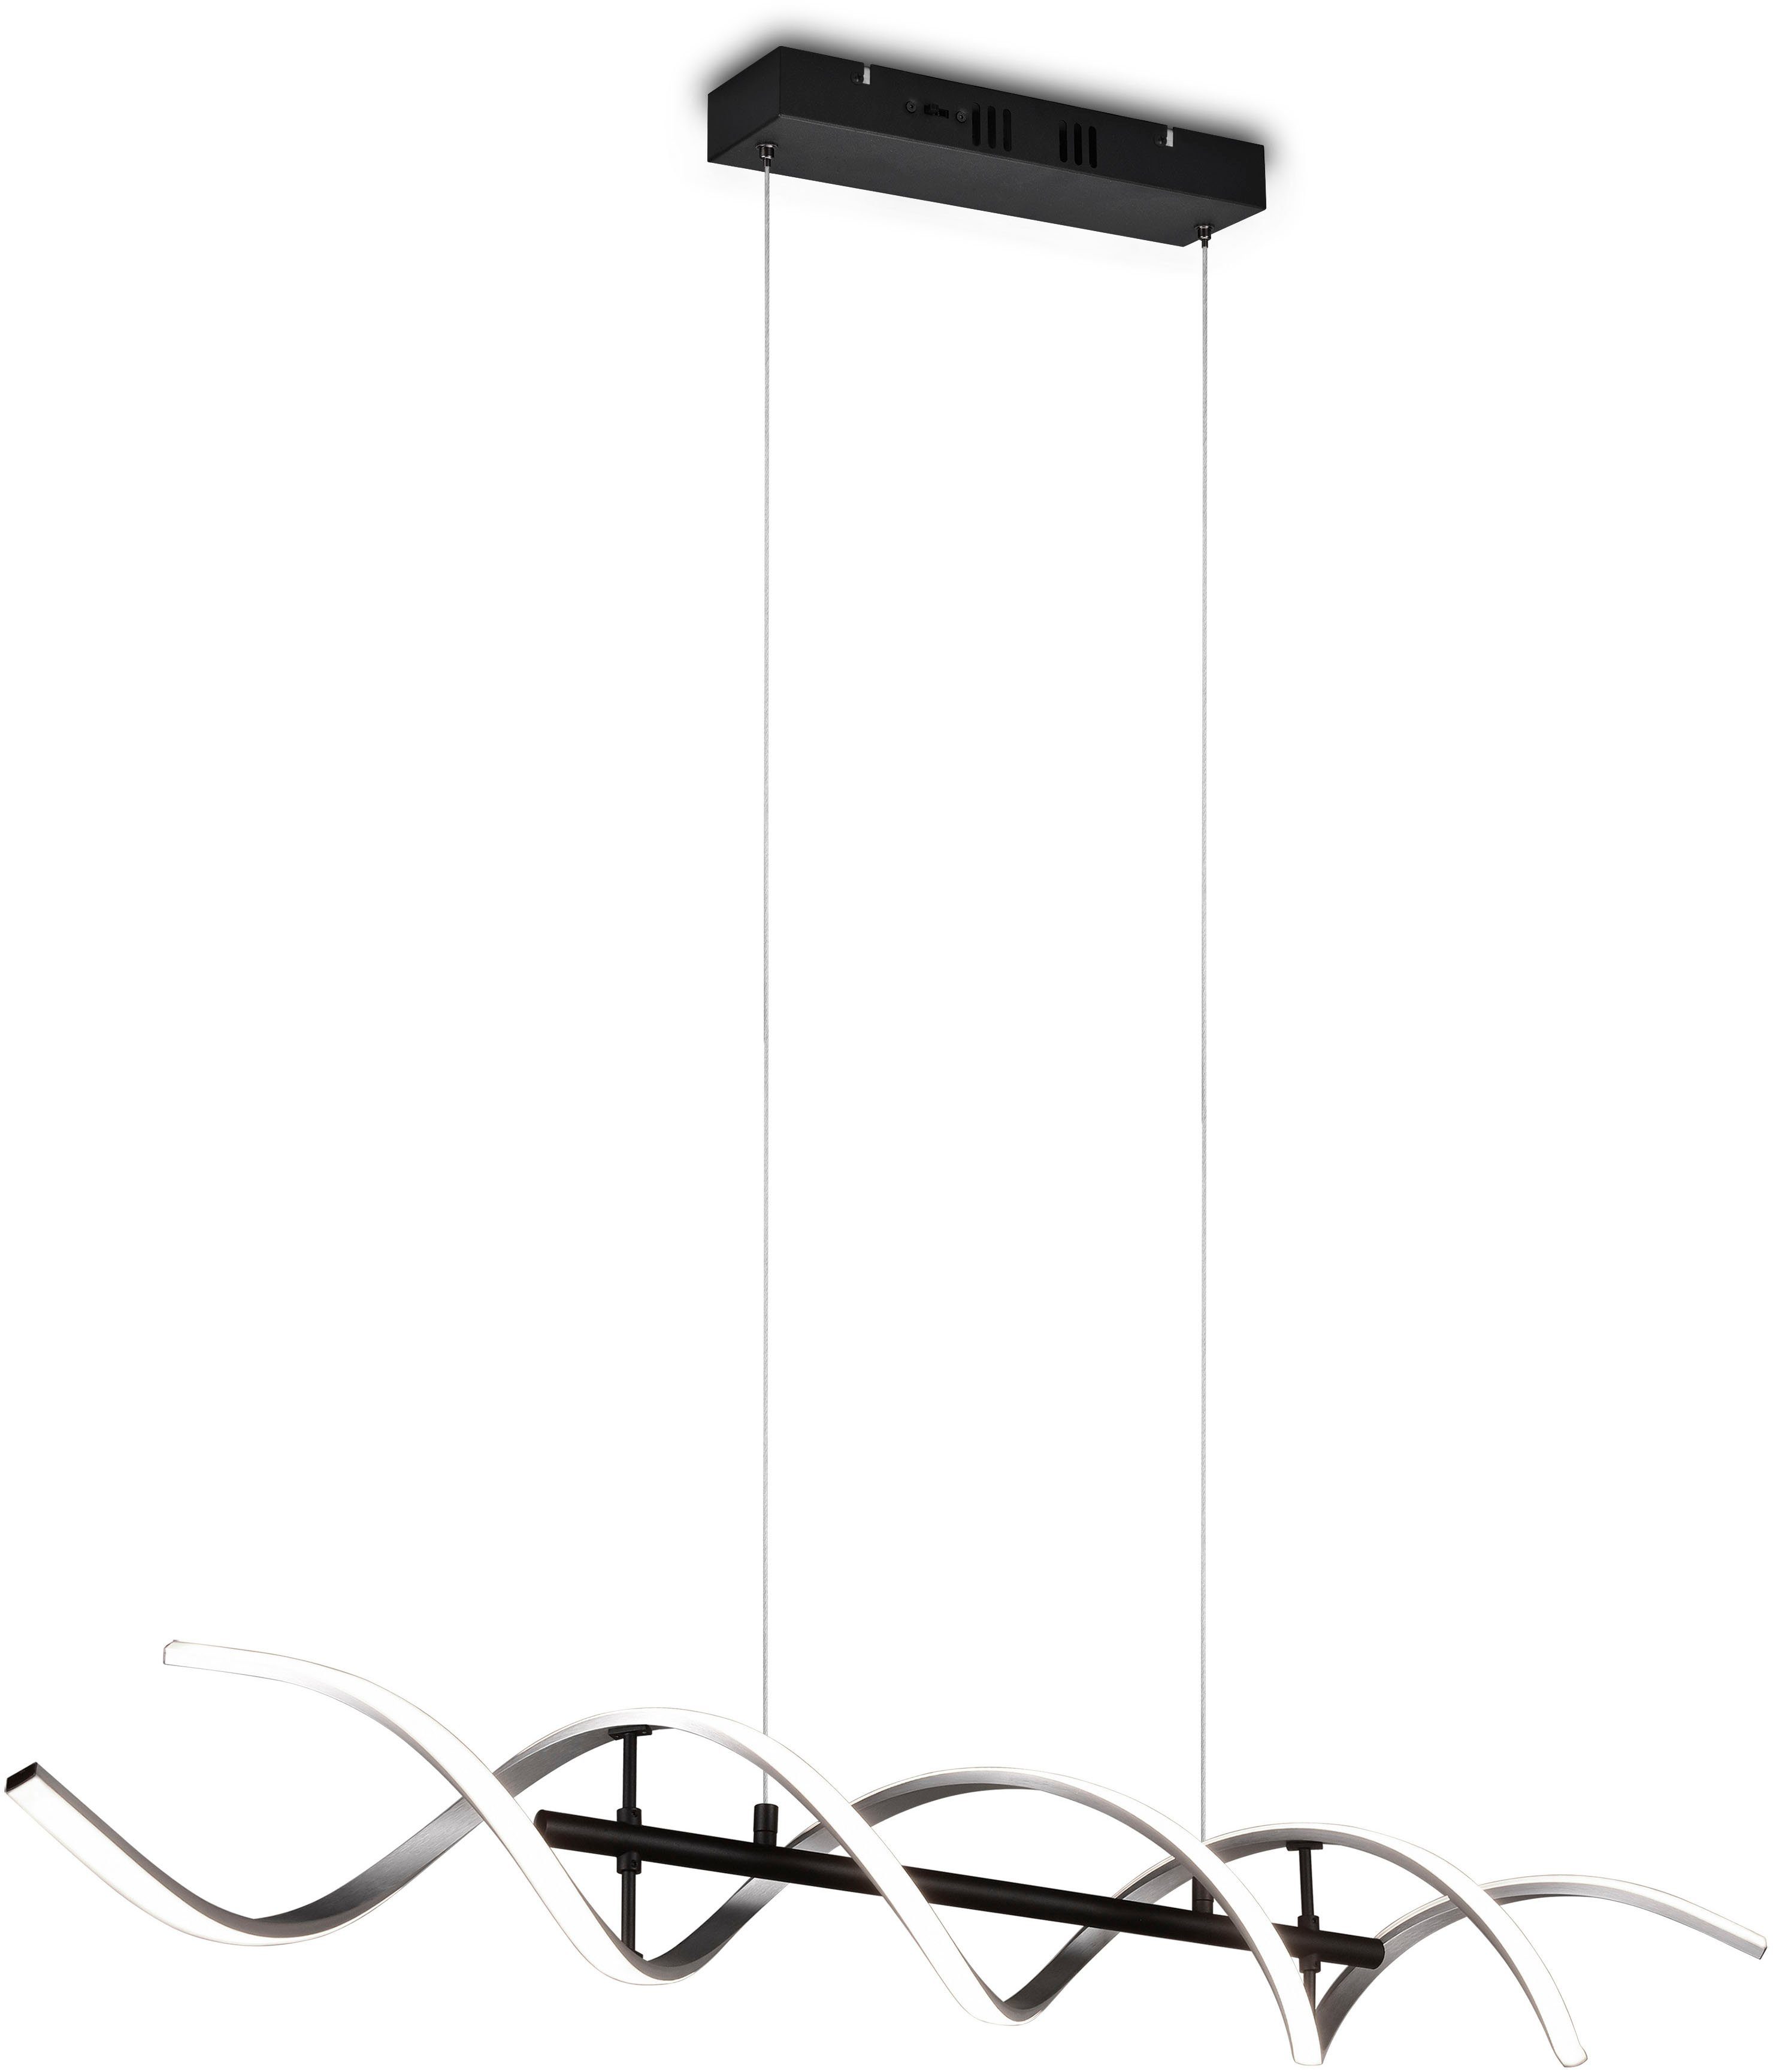 Trio Decke LED Lampen mit Dimmfunktion online kaufen | OTTO